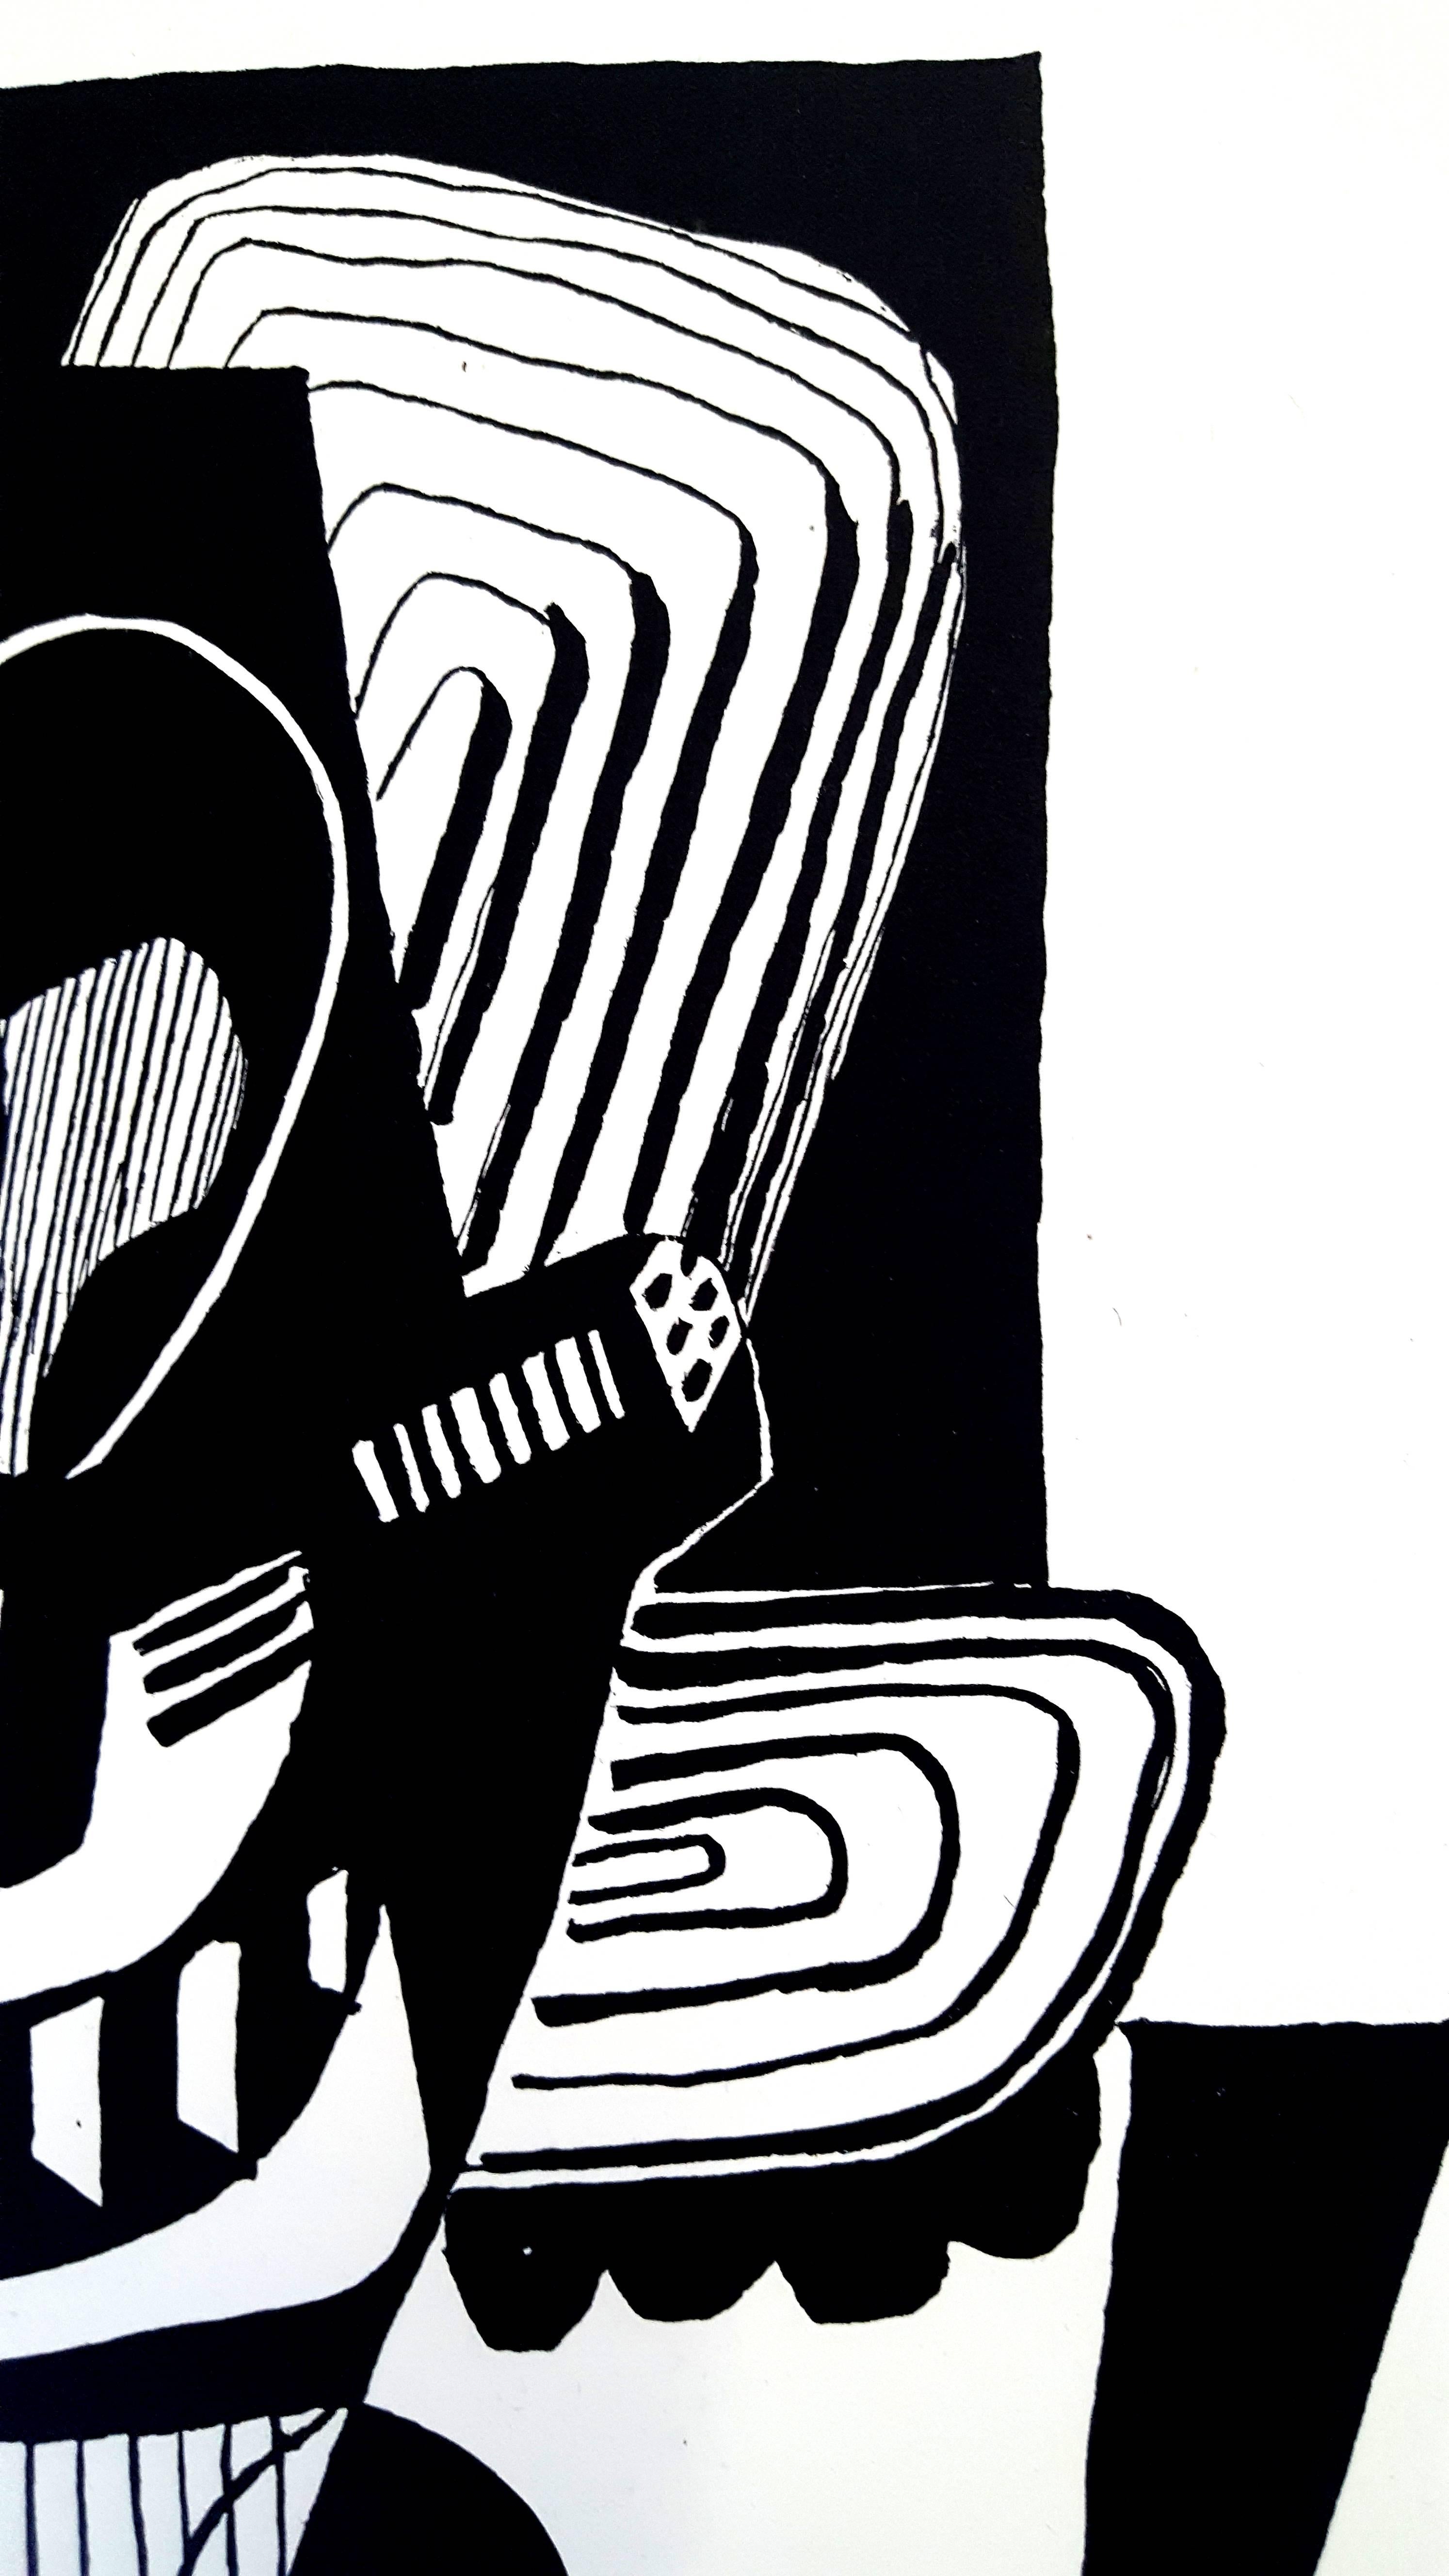 Pablo Picasso (après) 
Hélène Chez Archimede

Support : gravure sur bois de Georges Aubert
Dimensions : 44 x 33 cm
Portfolio : Helen Chez Archimede
Année : 1955
Tirage : 240 (Il s'agit ici de l'un des 140 réservés aux membres du Cercle du Nouveau